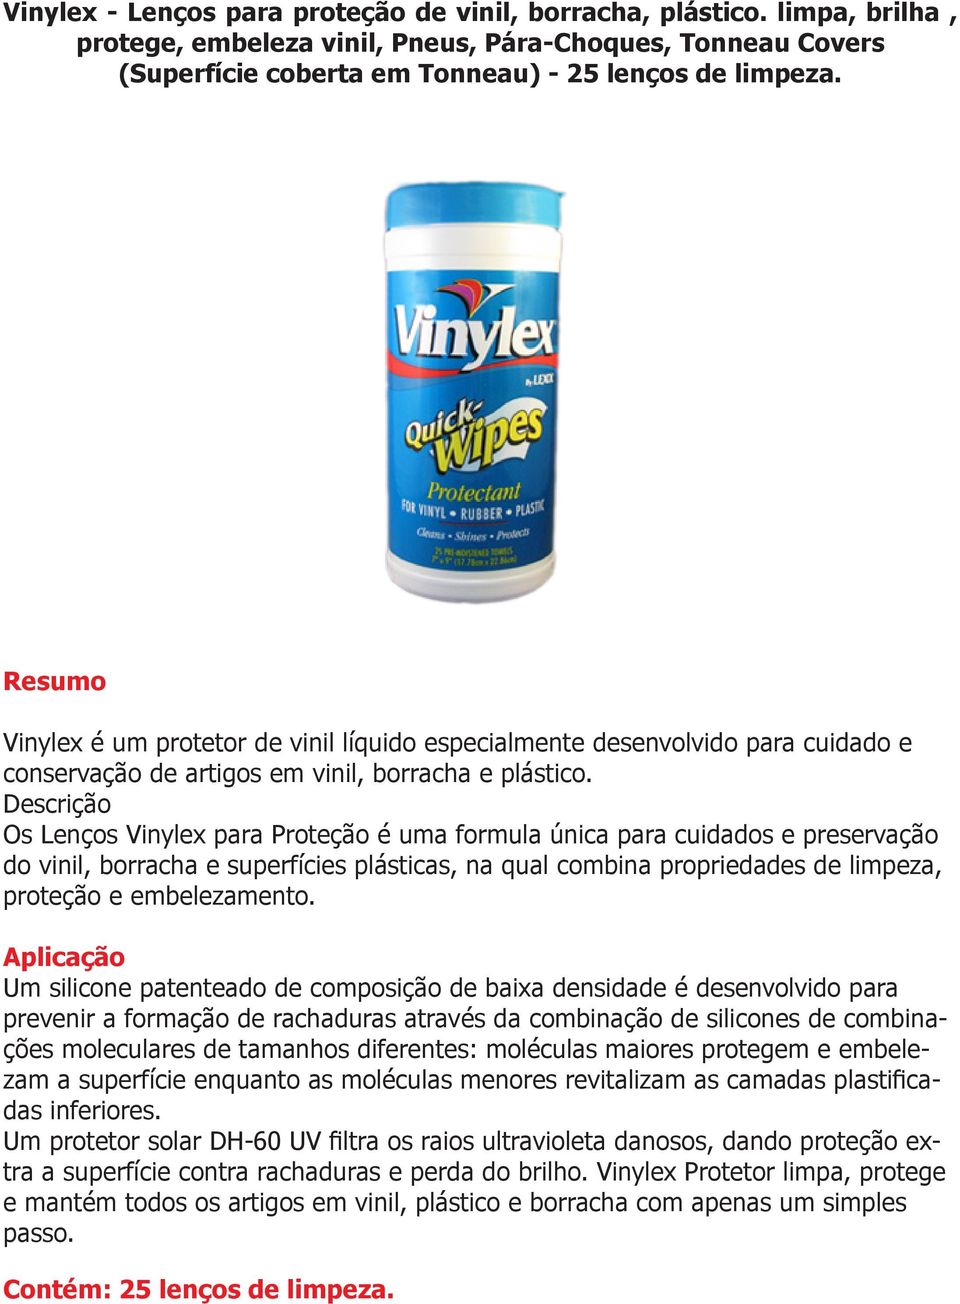 Os Lenços Vinylex para Proteção é uma formula única para cuidados e preservação do vinil, borracha e superfícies plásticas, na qual combina propriedades de limpeza, proteção e embelezamento.